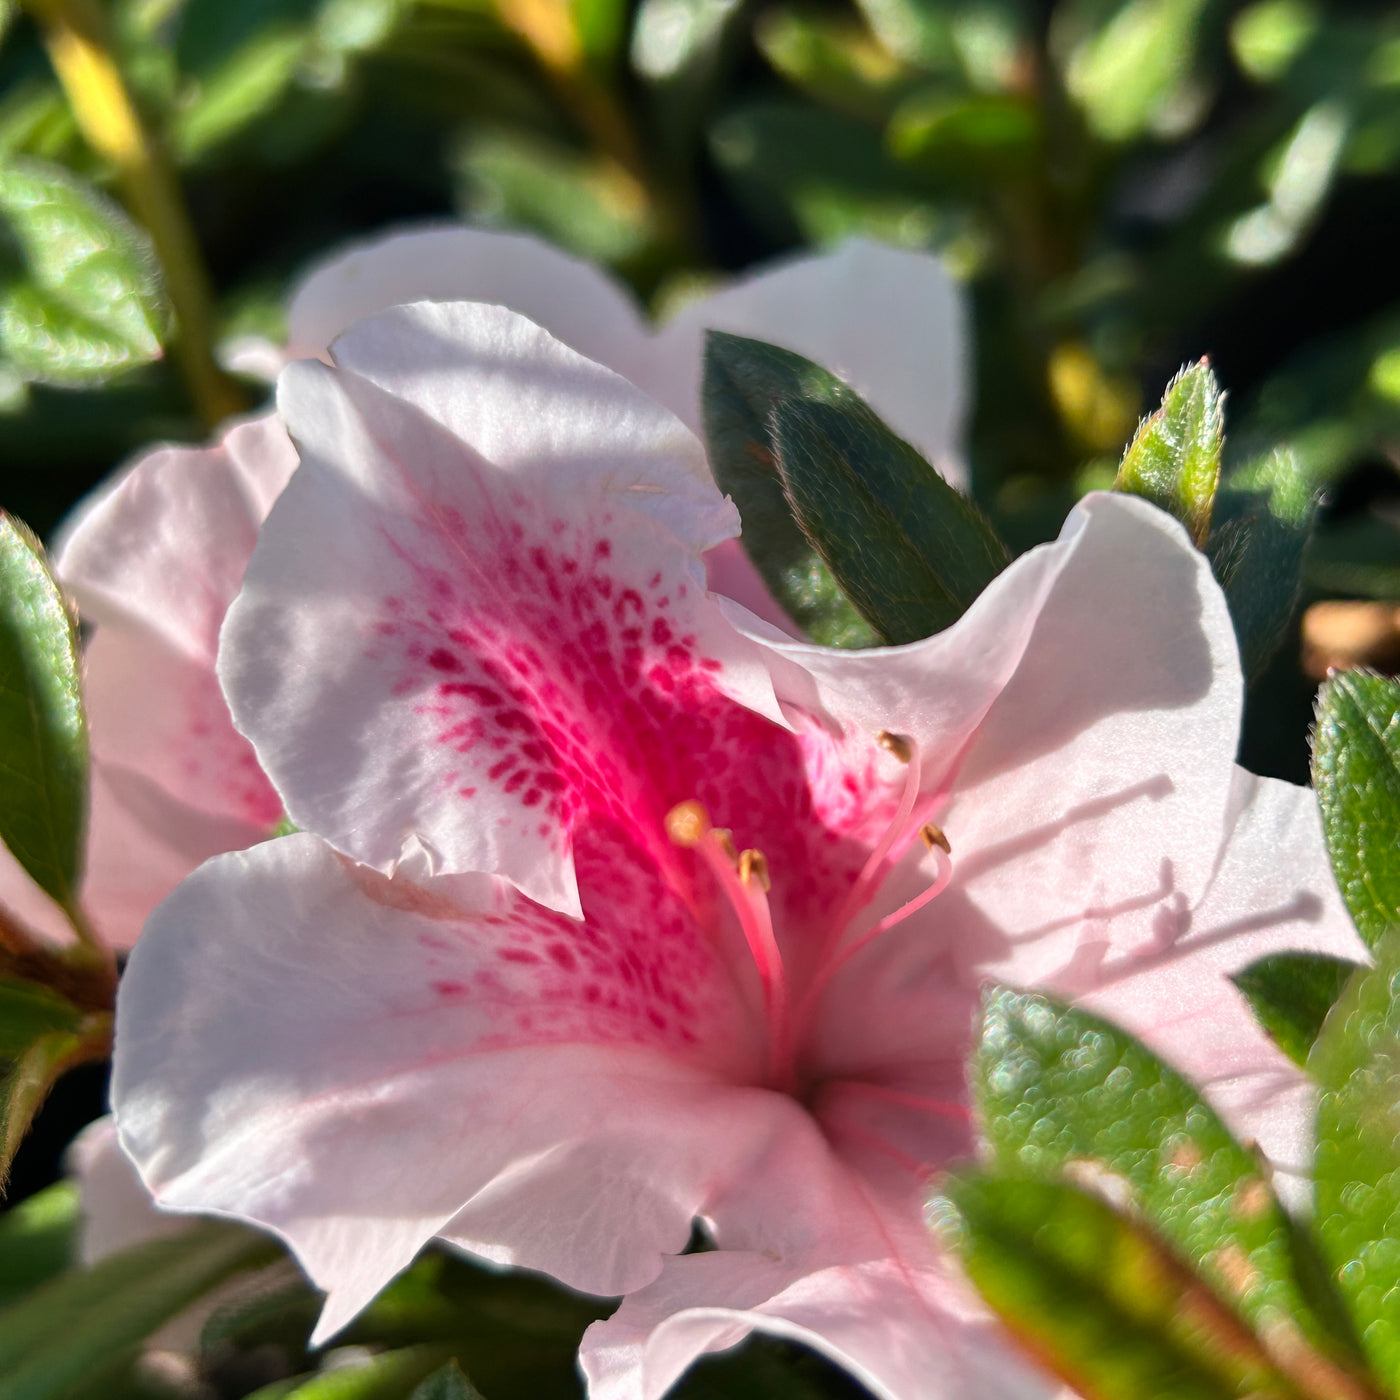 Rhododendron ‘Robled’ ~ Encore® Autumn Chiffon™ Azalea